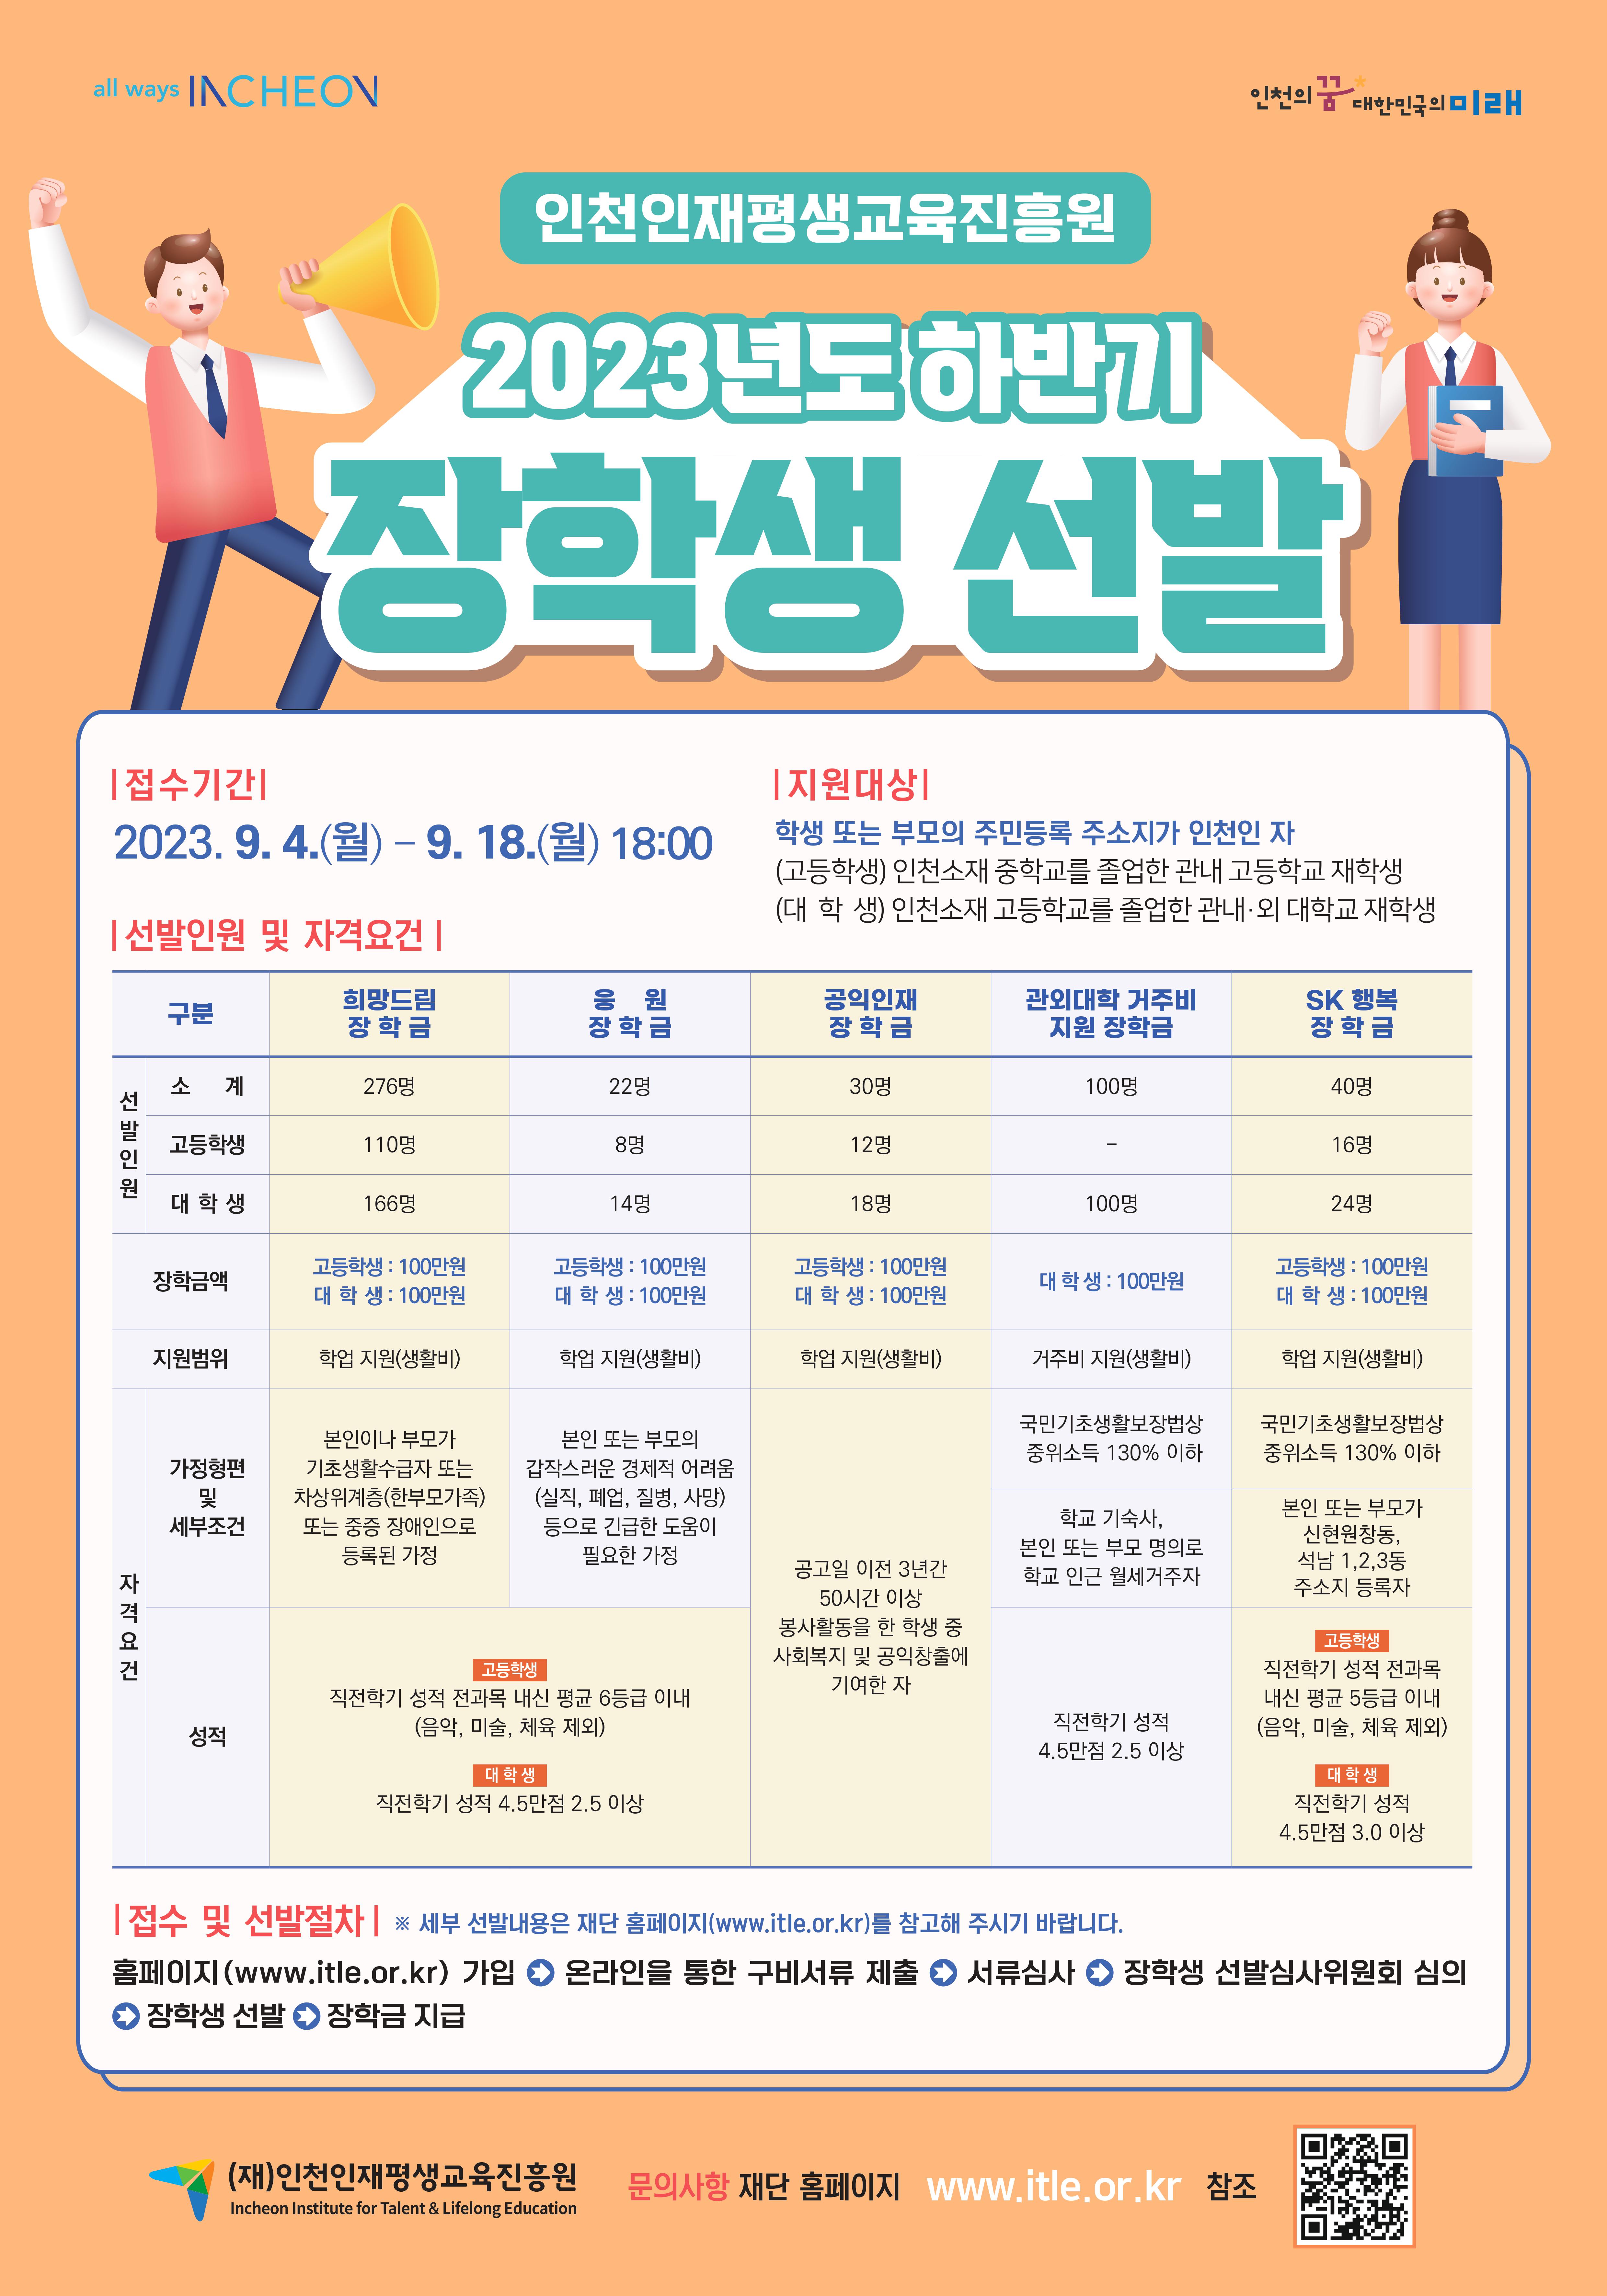 2023년도 (재)인천인재평생교육진흥원 하반기 장학생 선발 포스터